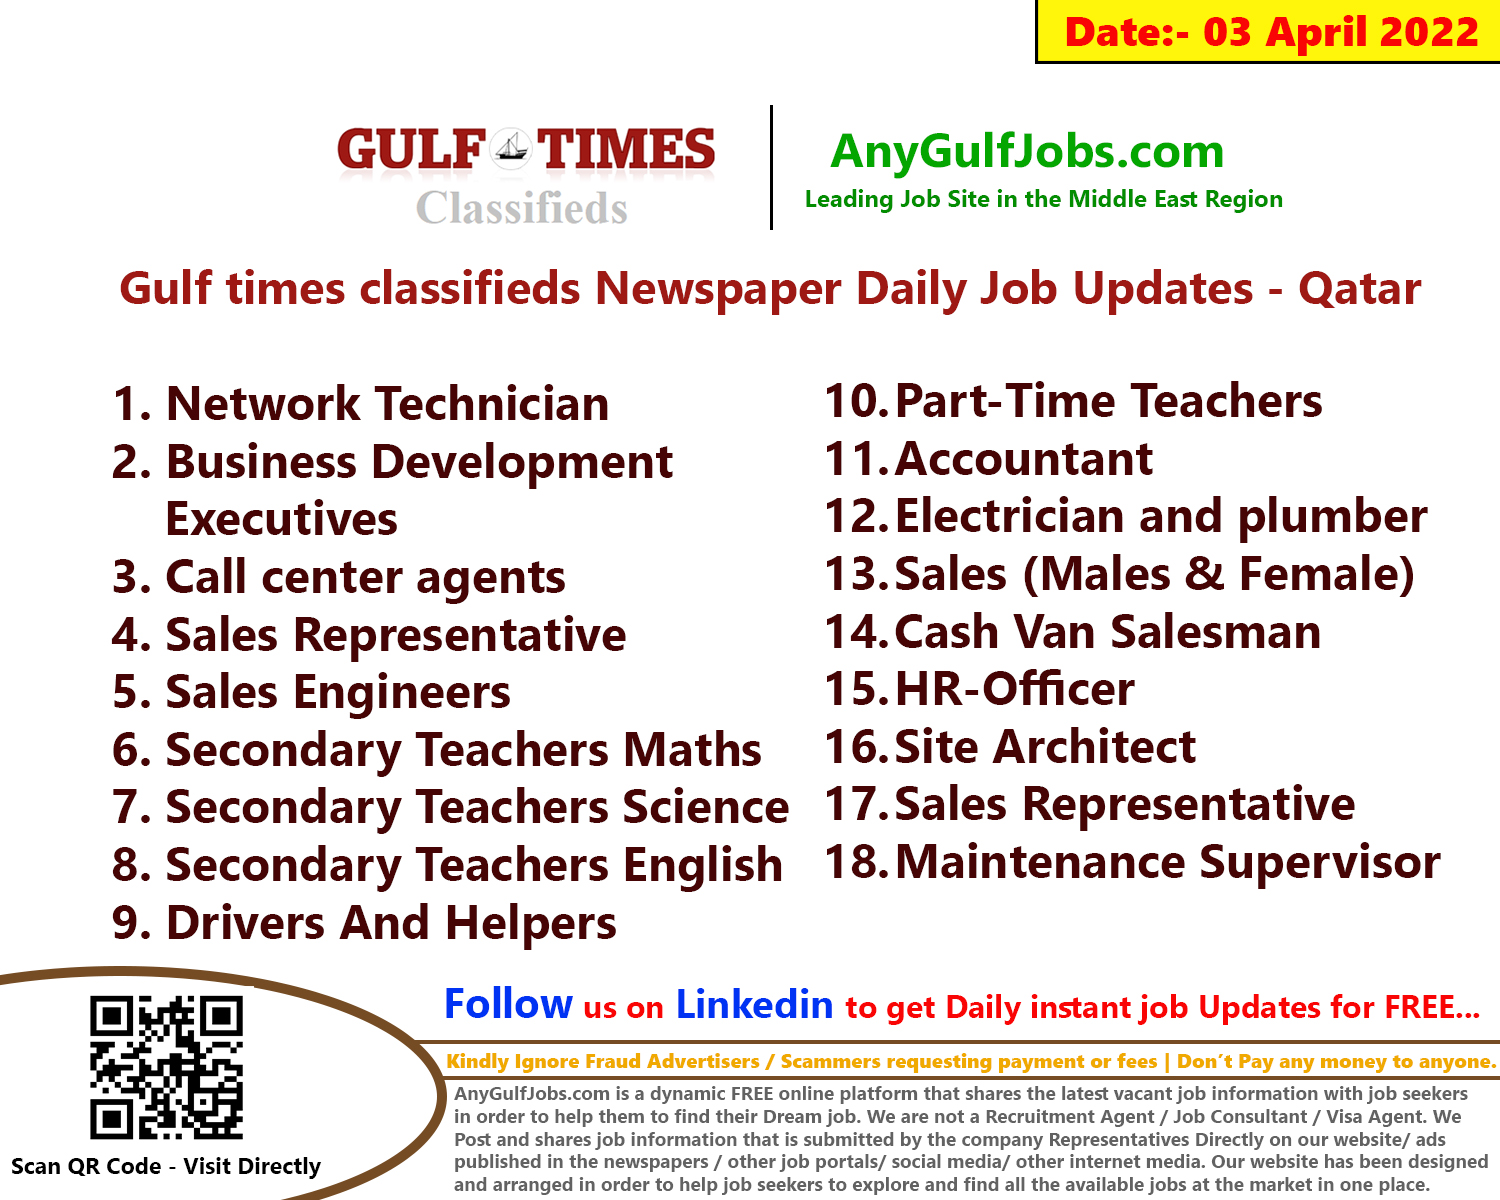 Gulf times classifieds Job Vacancies Qatar - 03 April 2022